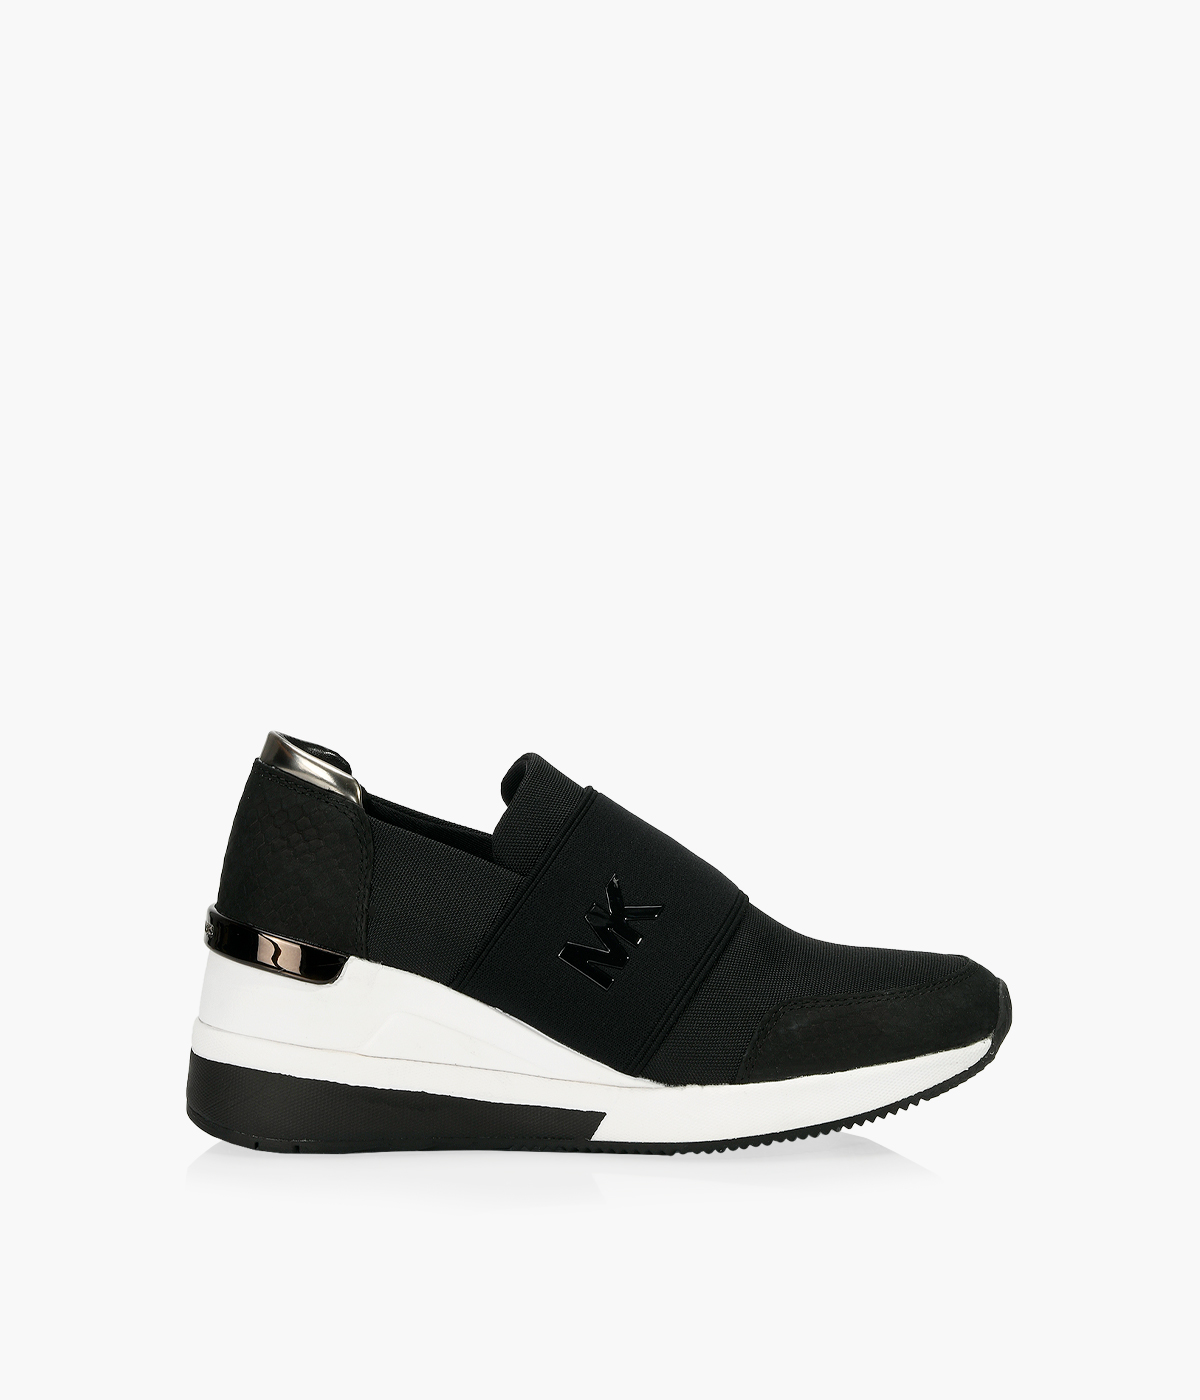 MICHAEL MICHAEL KORS FELIX TRAINER - Black Leather | Browns Shoes